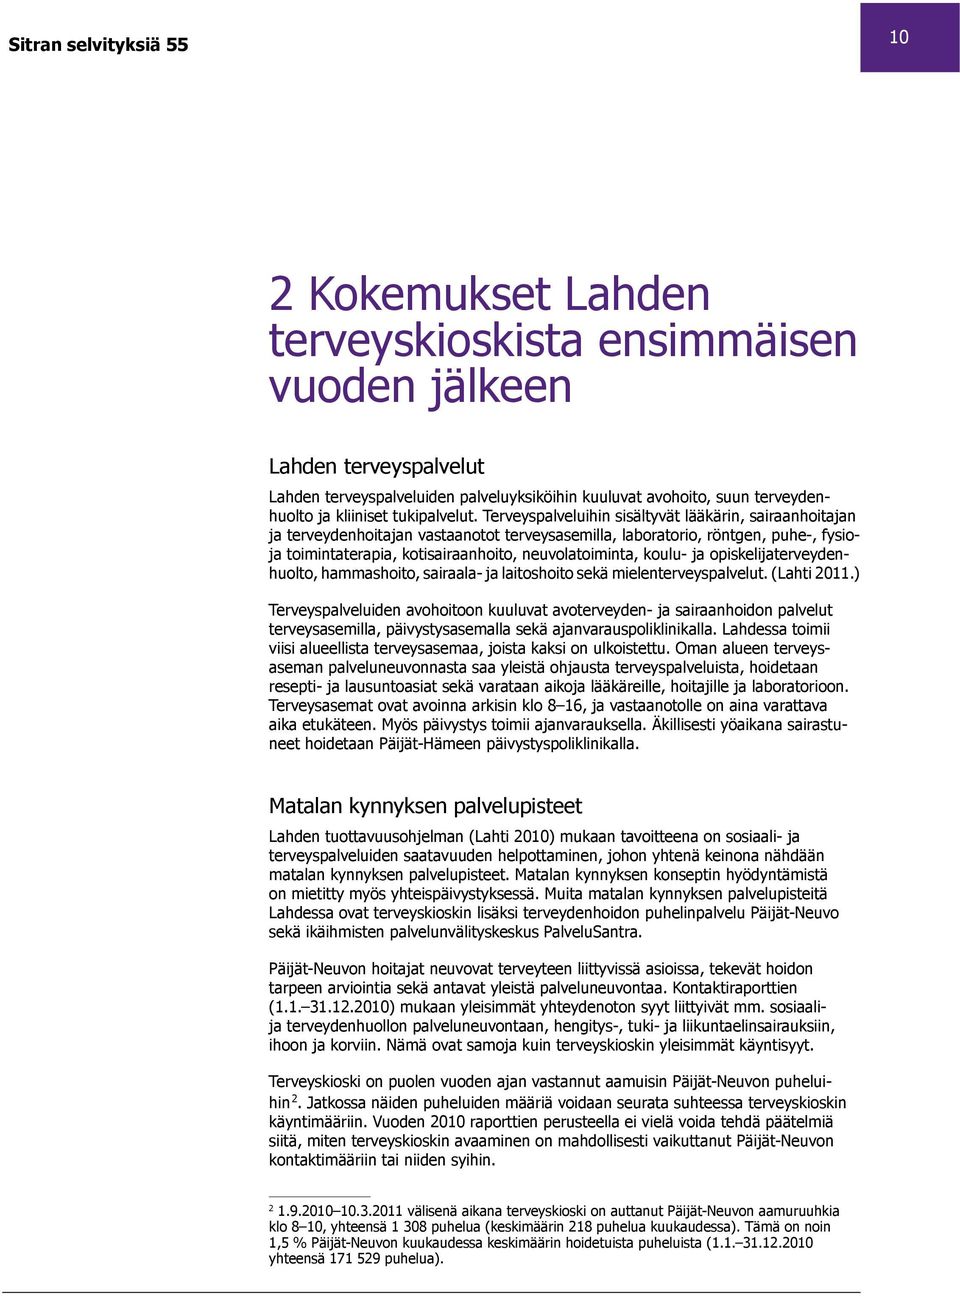 koulu- ja opiskelijaterveydenhuolto, hammashoito, sairaala- ja laitoshoito sekä mielenterveyspalvelut. (Lahti 2011.